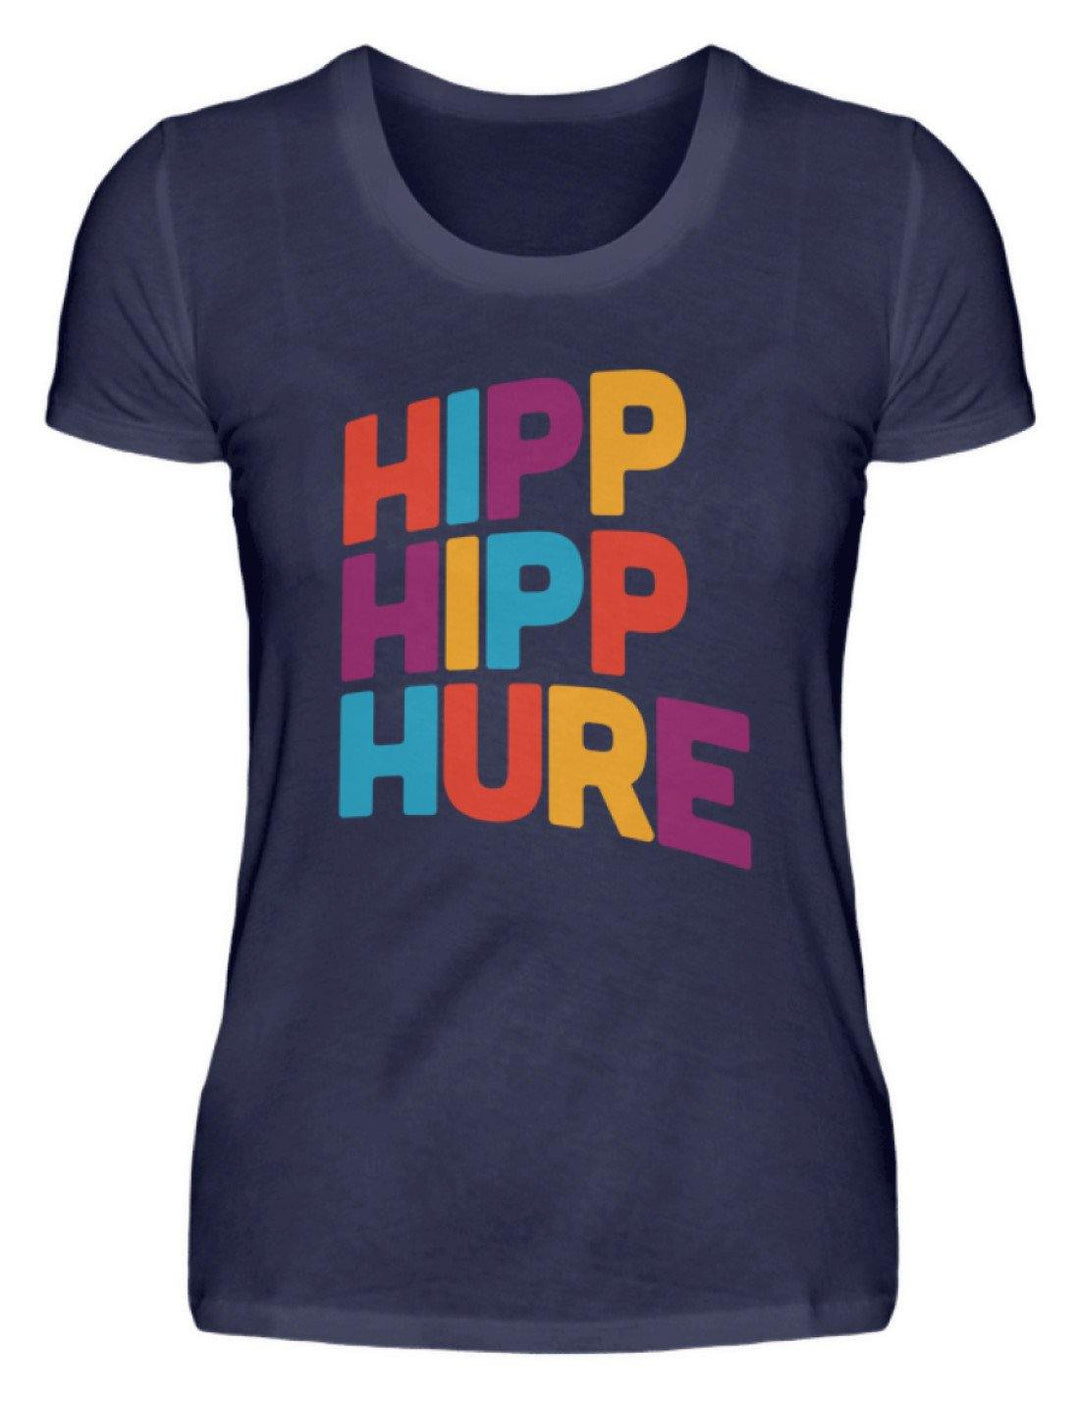 Hipp Hipp Hure- Words on Shirts  - Damenshirt - Words on Shirts Sag es mit dem Mittelfinger Shirts Hoodies Sweatshirt Taschen Gymsack Spruch Sprüche Statement